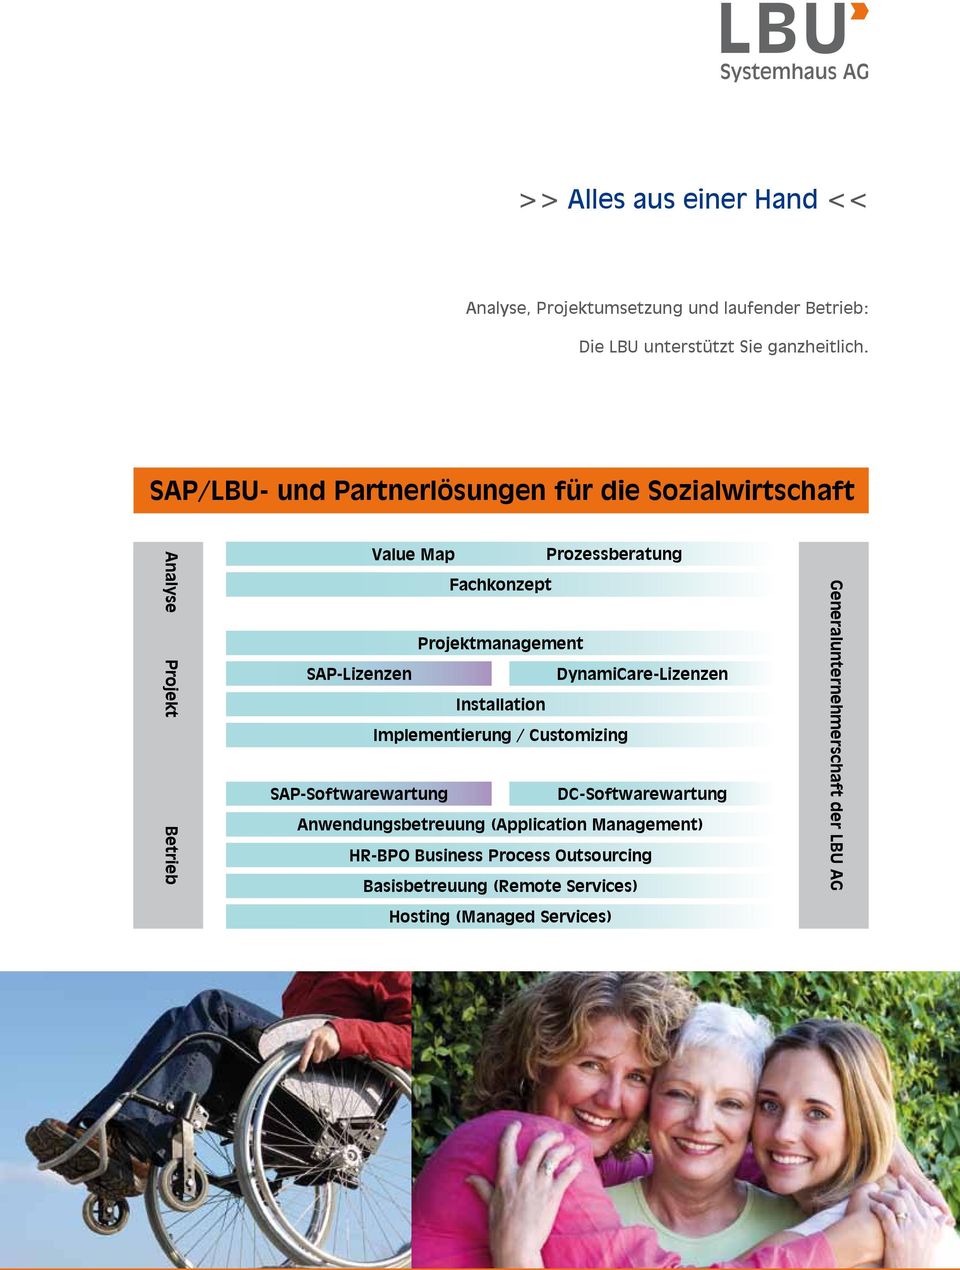 SAP-Lizenzen DynamiCare-Lizenzen Installation Implementierung / Customizing SAP-Softwarewartung DC-Softwarewartung Anwendungsbetreuung